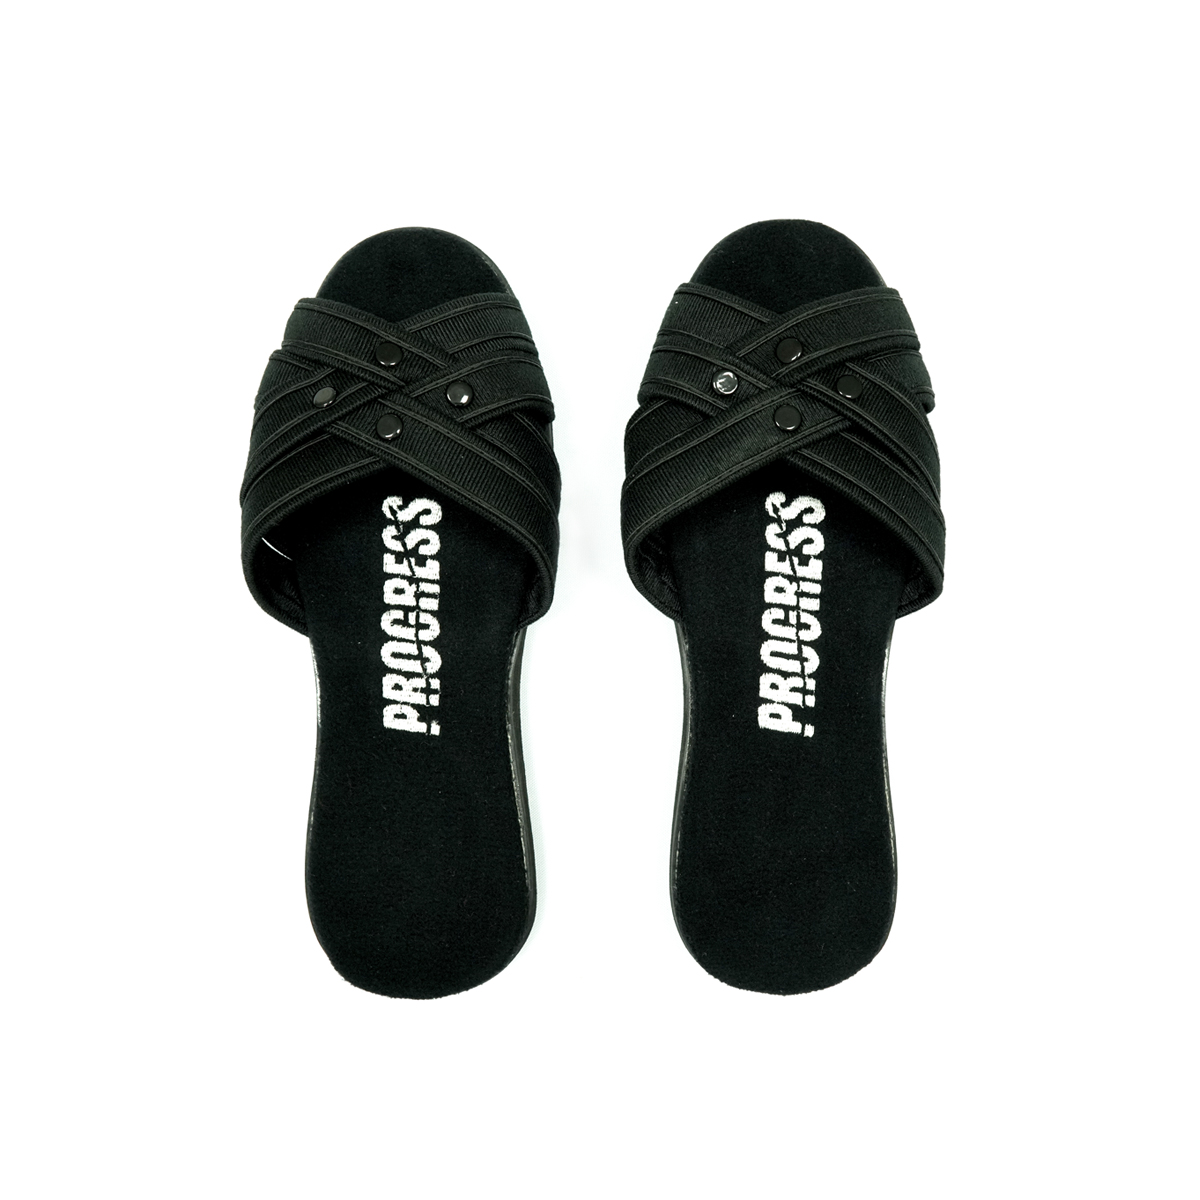 mongolian ugg slippers